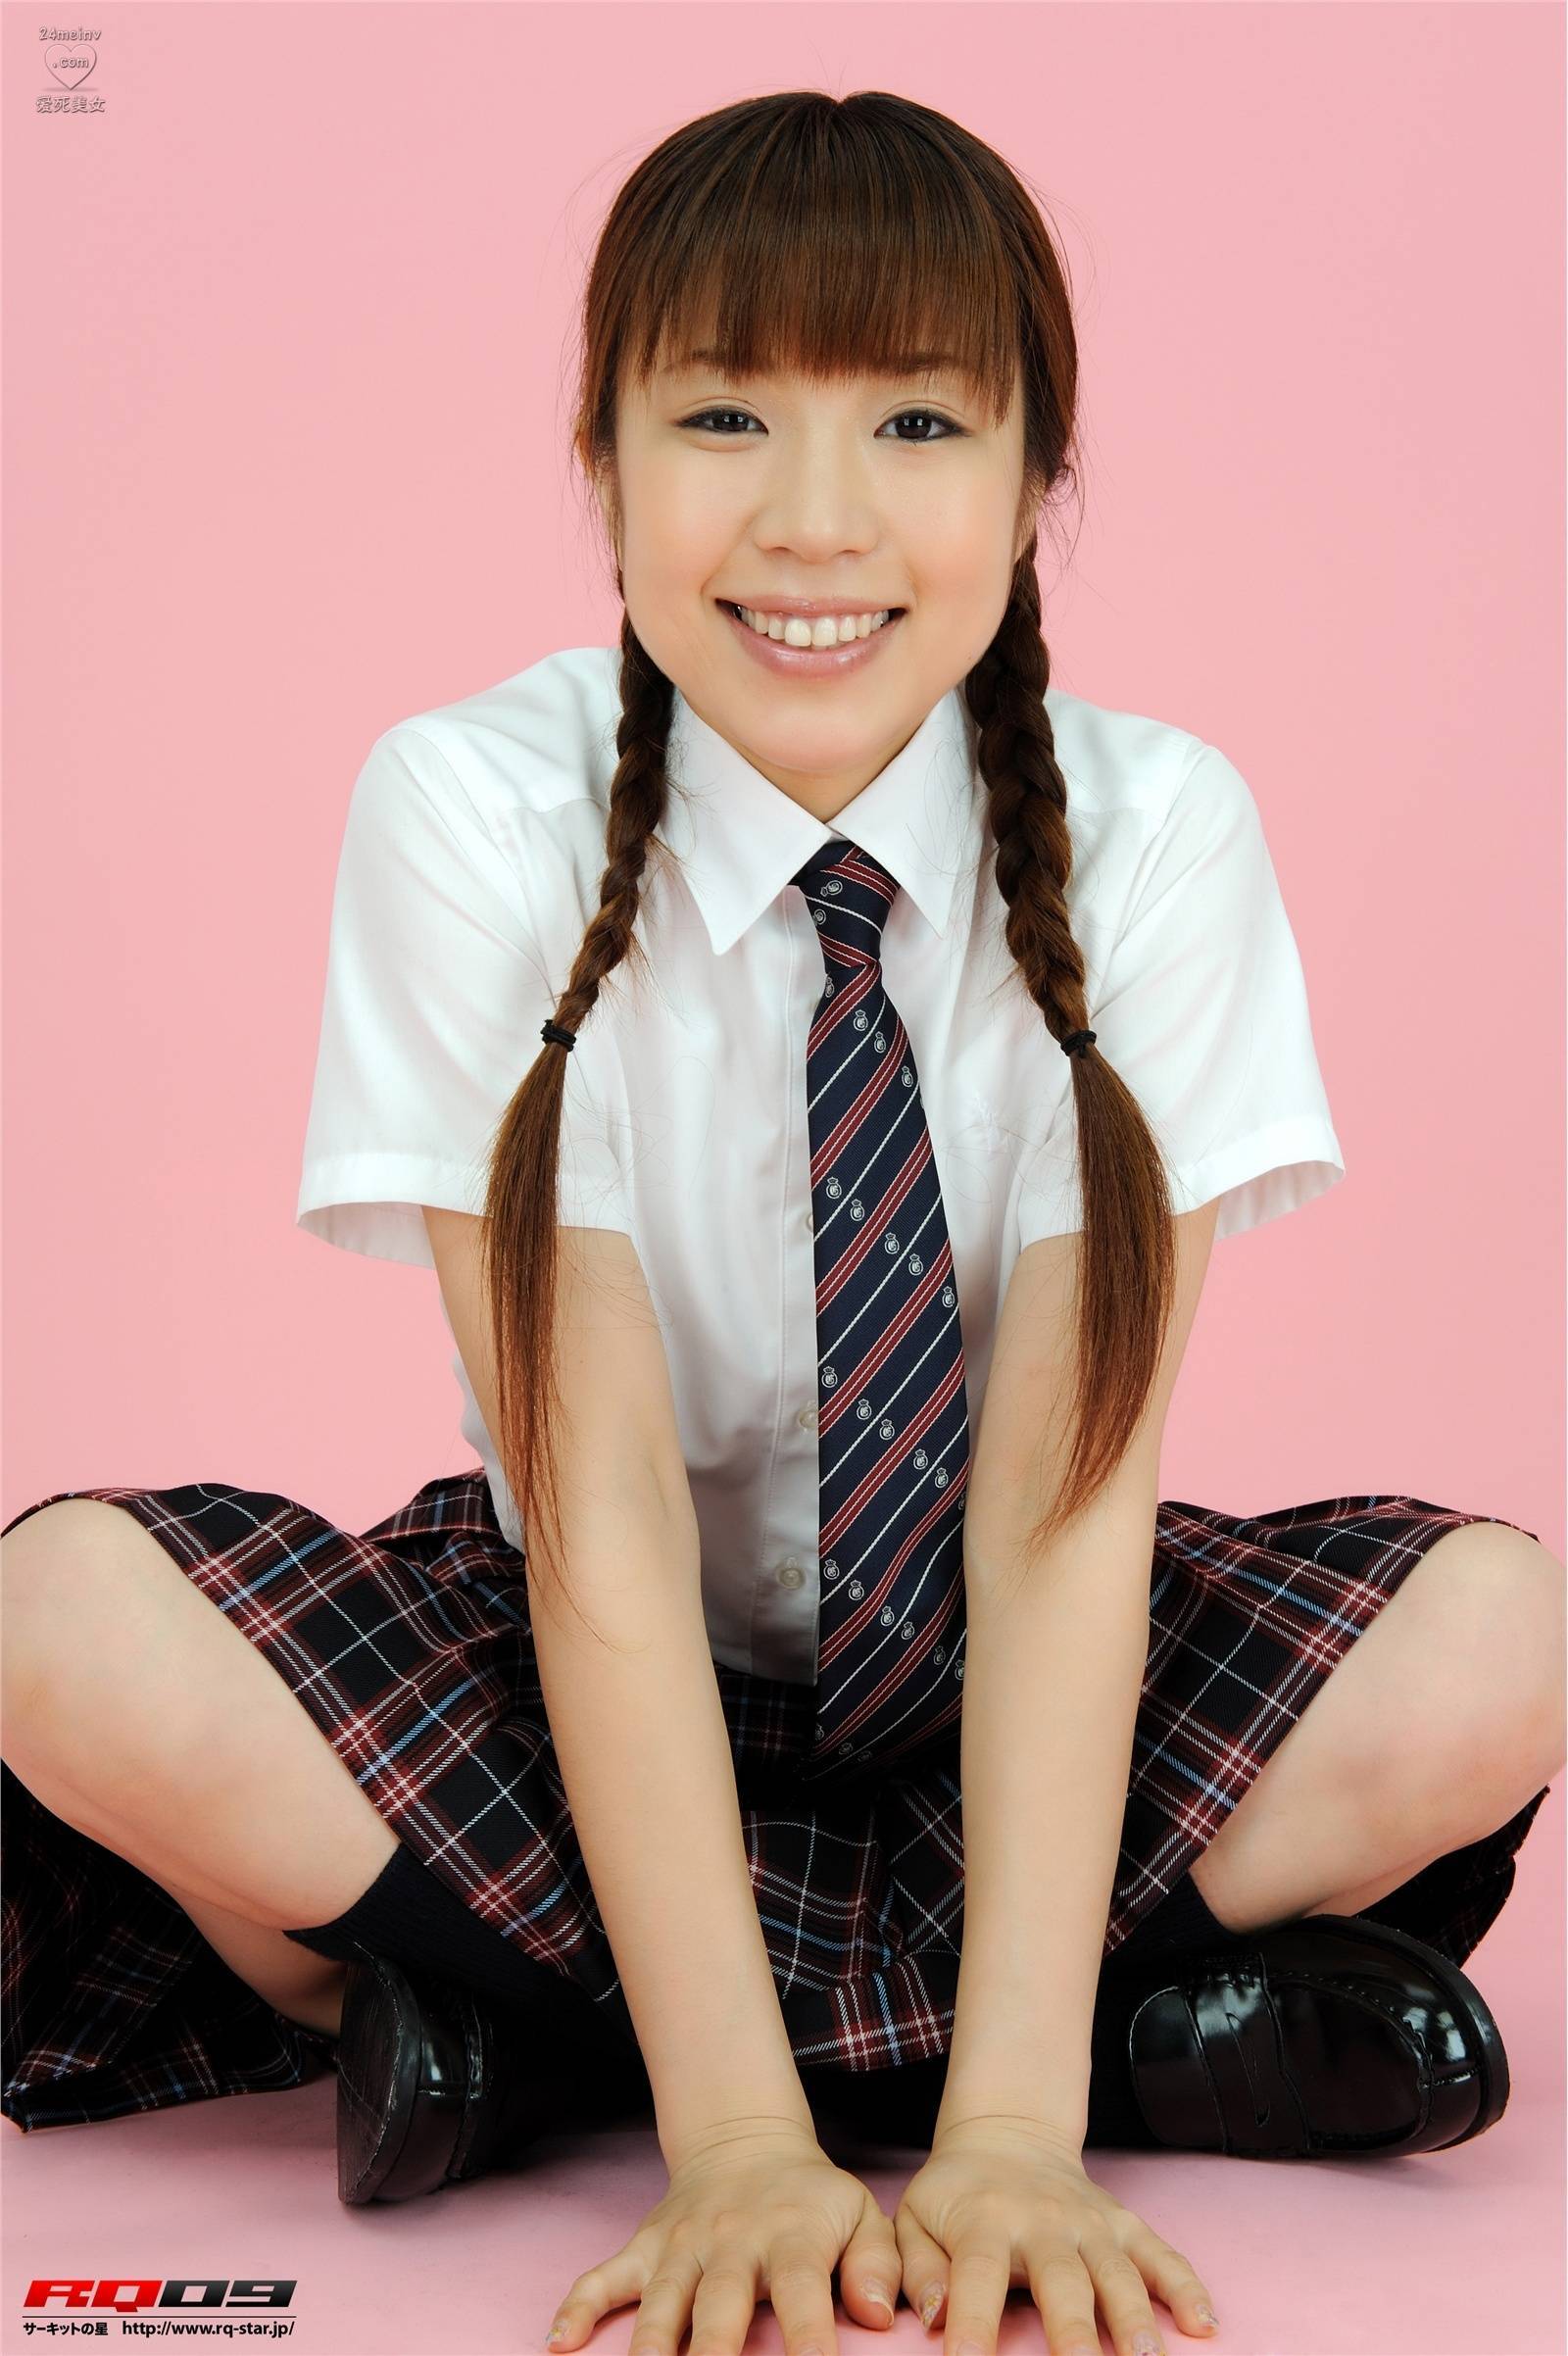 桃川祐子 Student Style Yuko Momokawa